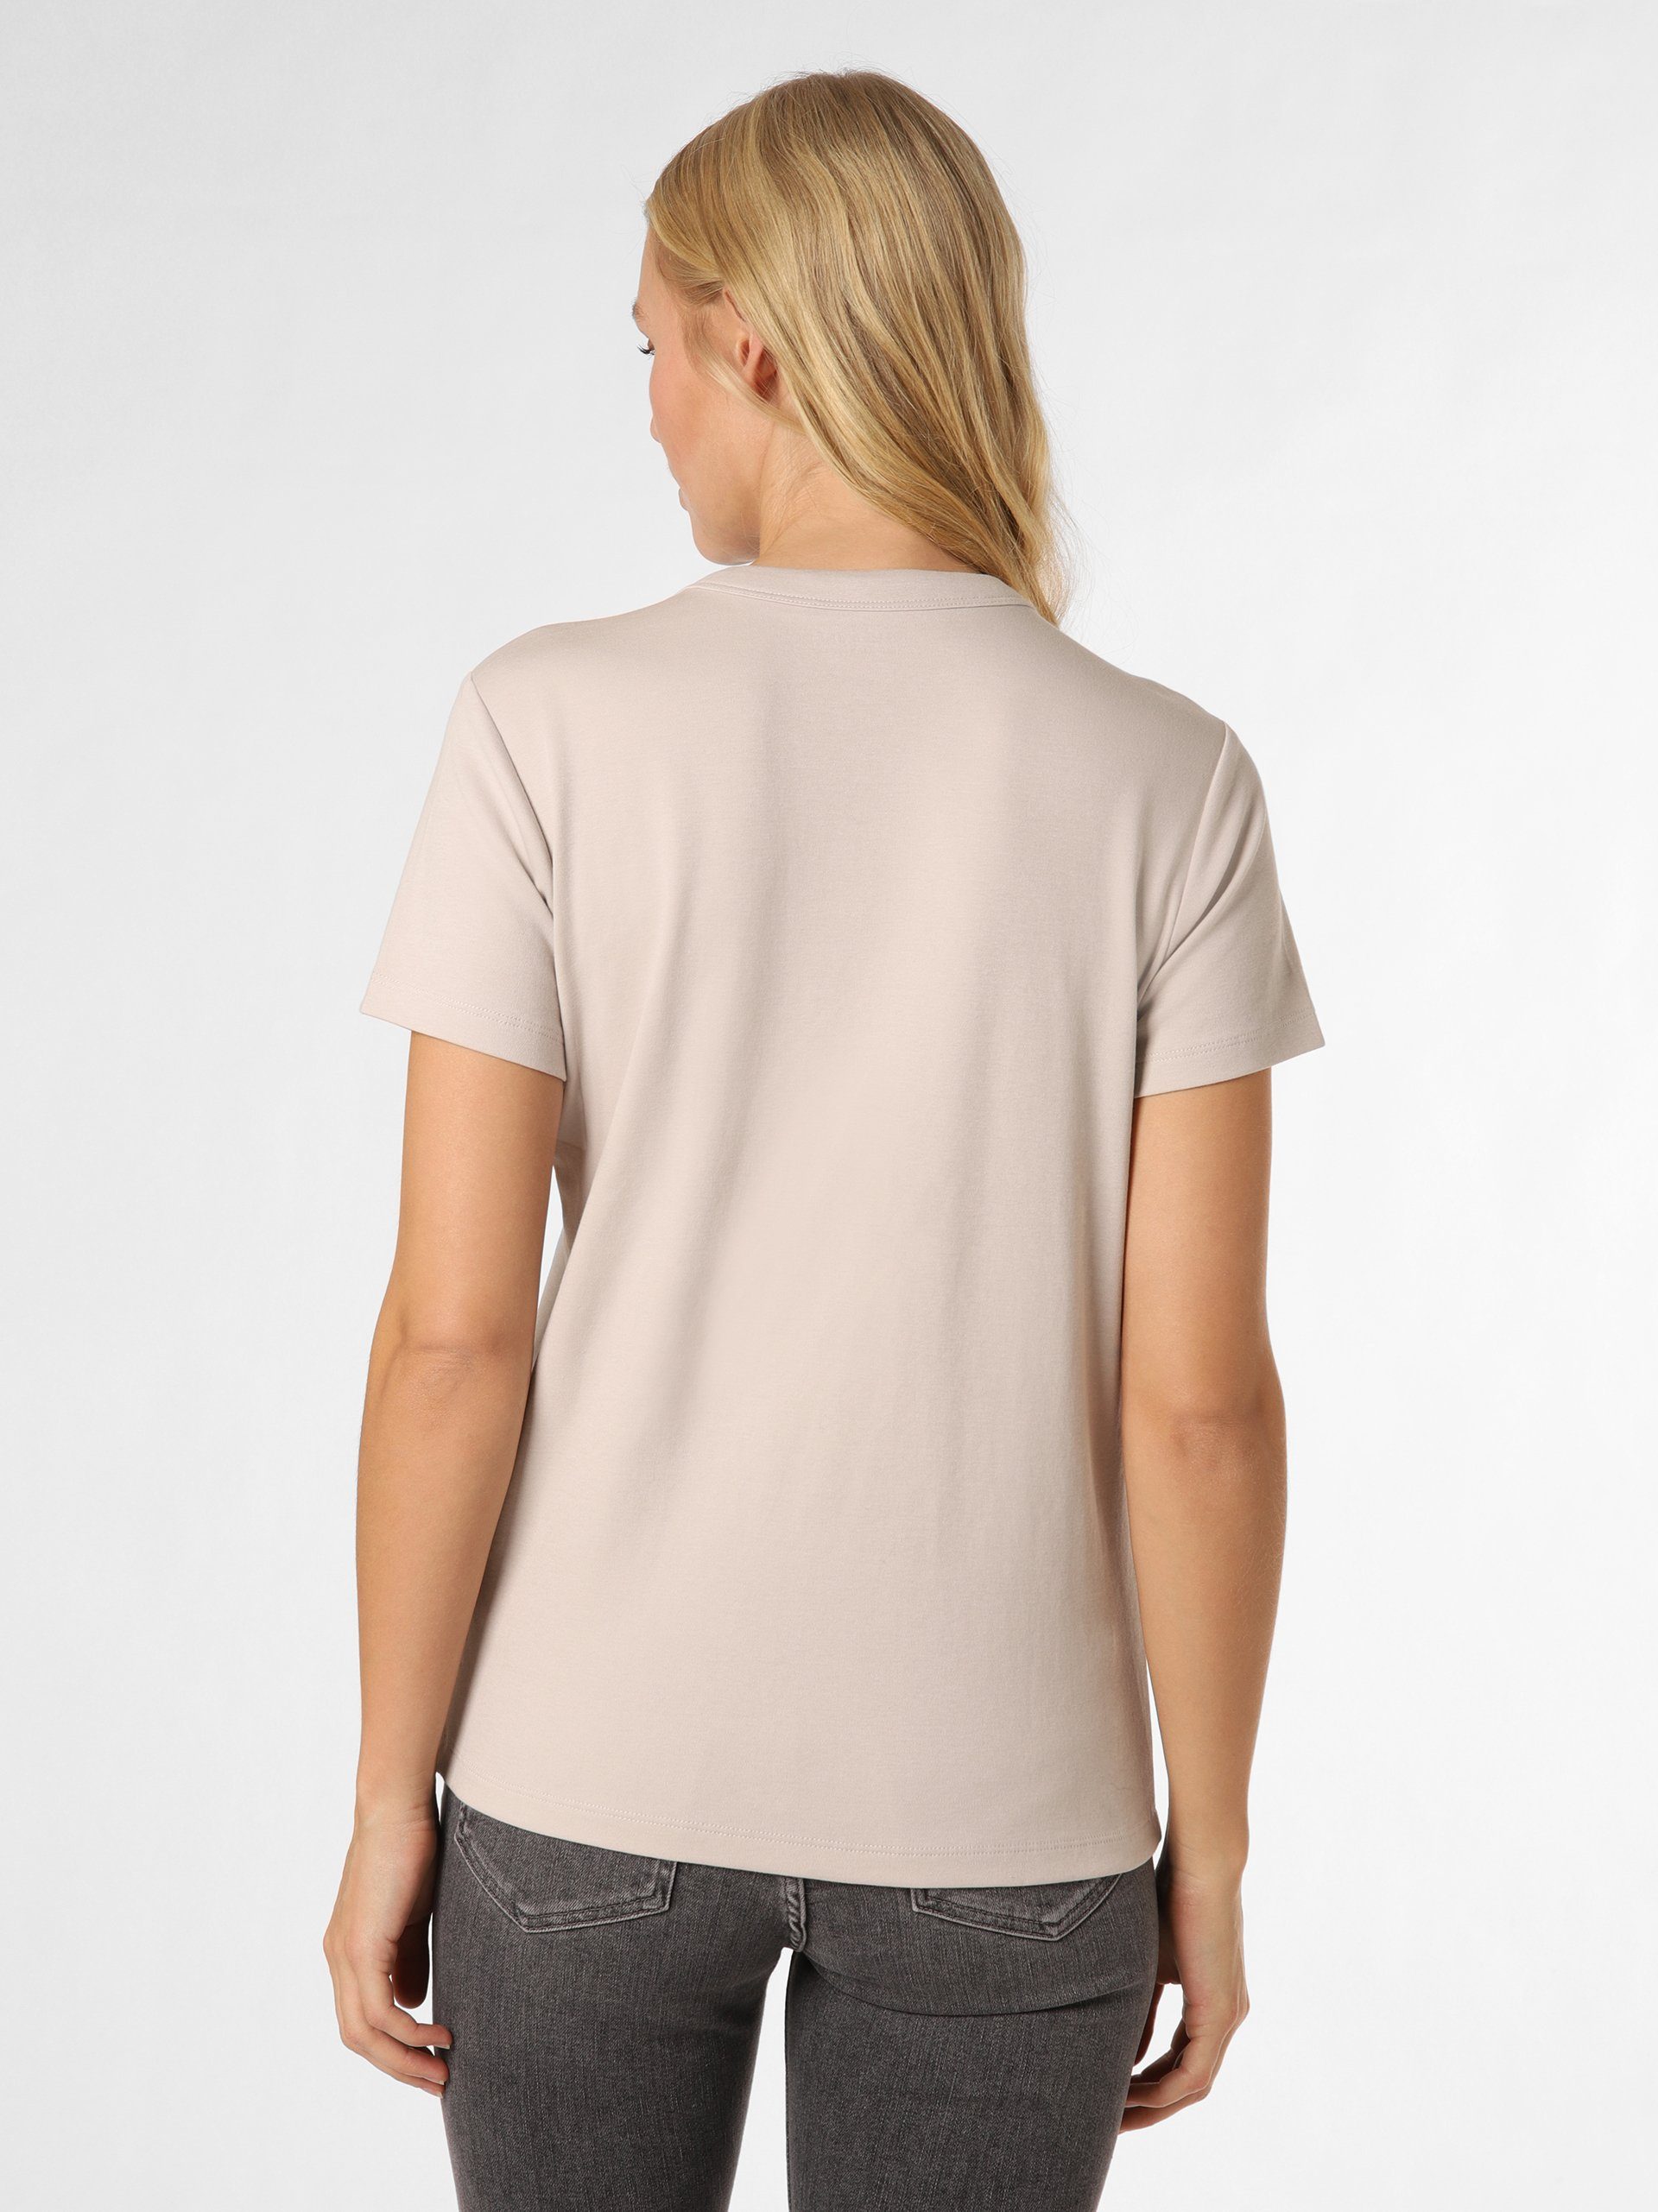 Lund hellgrau Marie T-Shirt